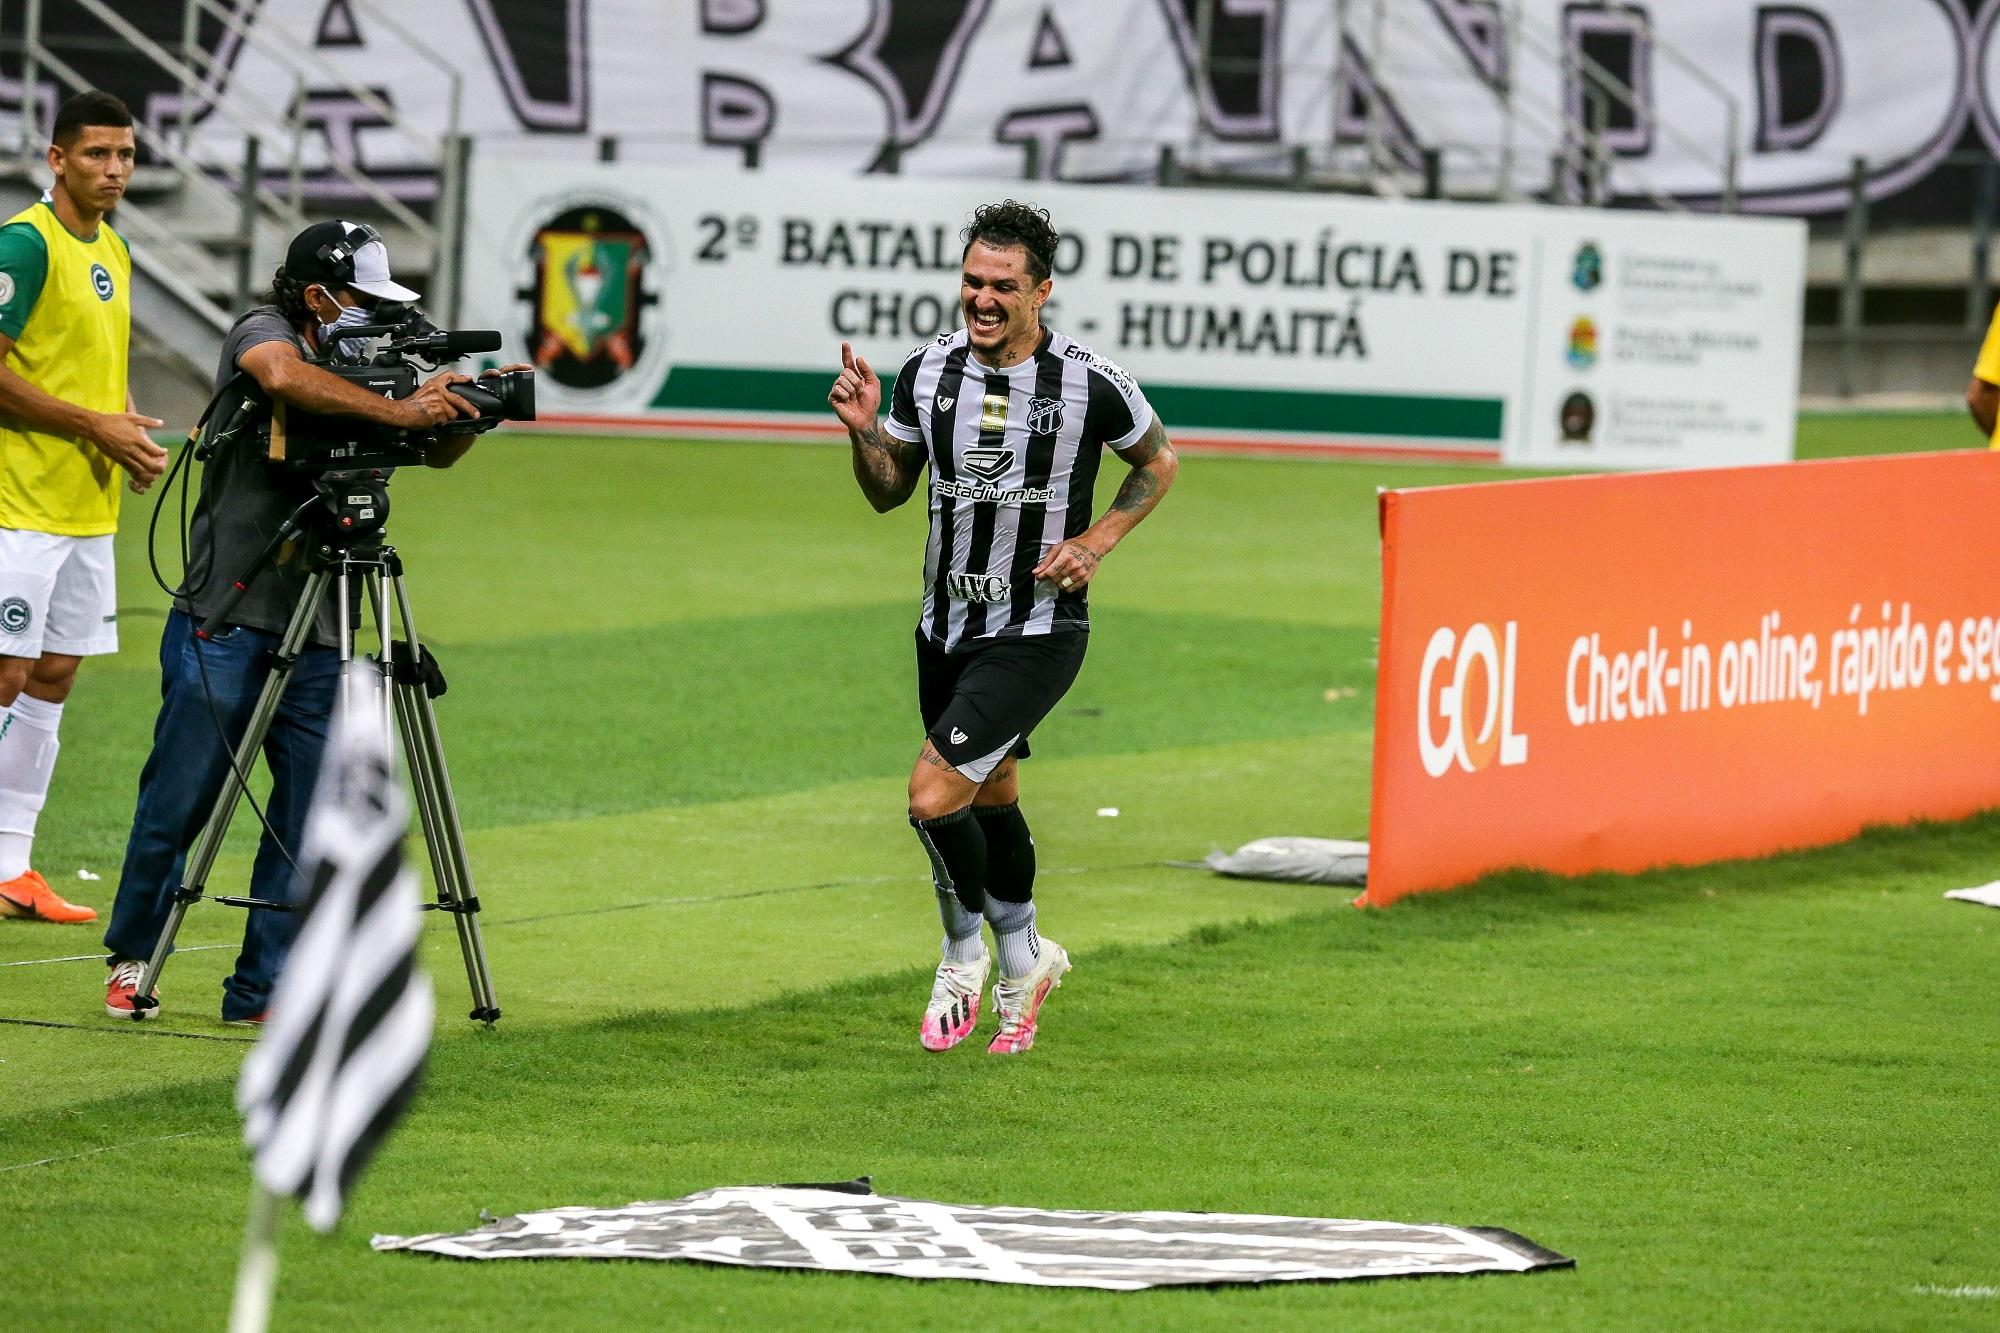 O meia Vinícius é o artilheiro do Vovô na temporada e marcou um belo gol no empate contra o Flu, sendo a referencia do time